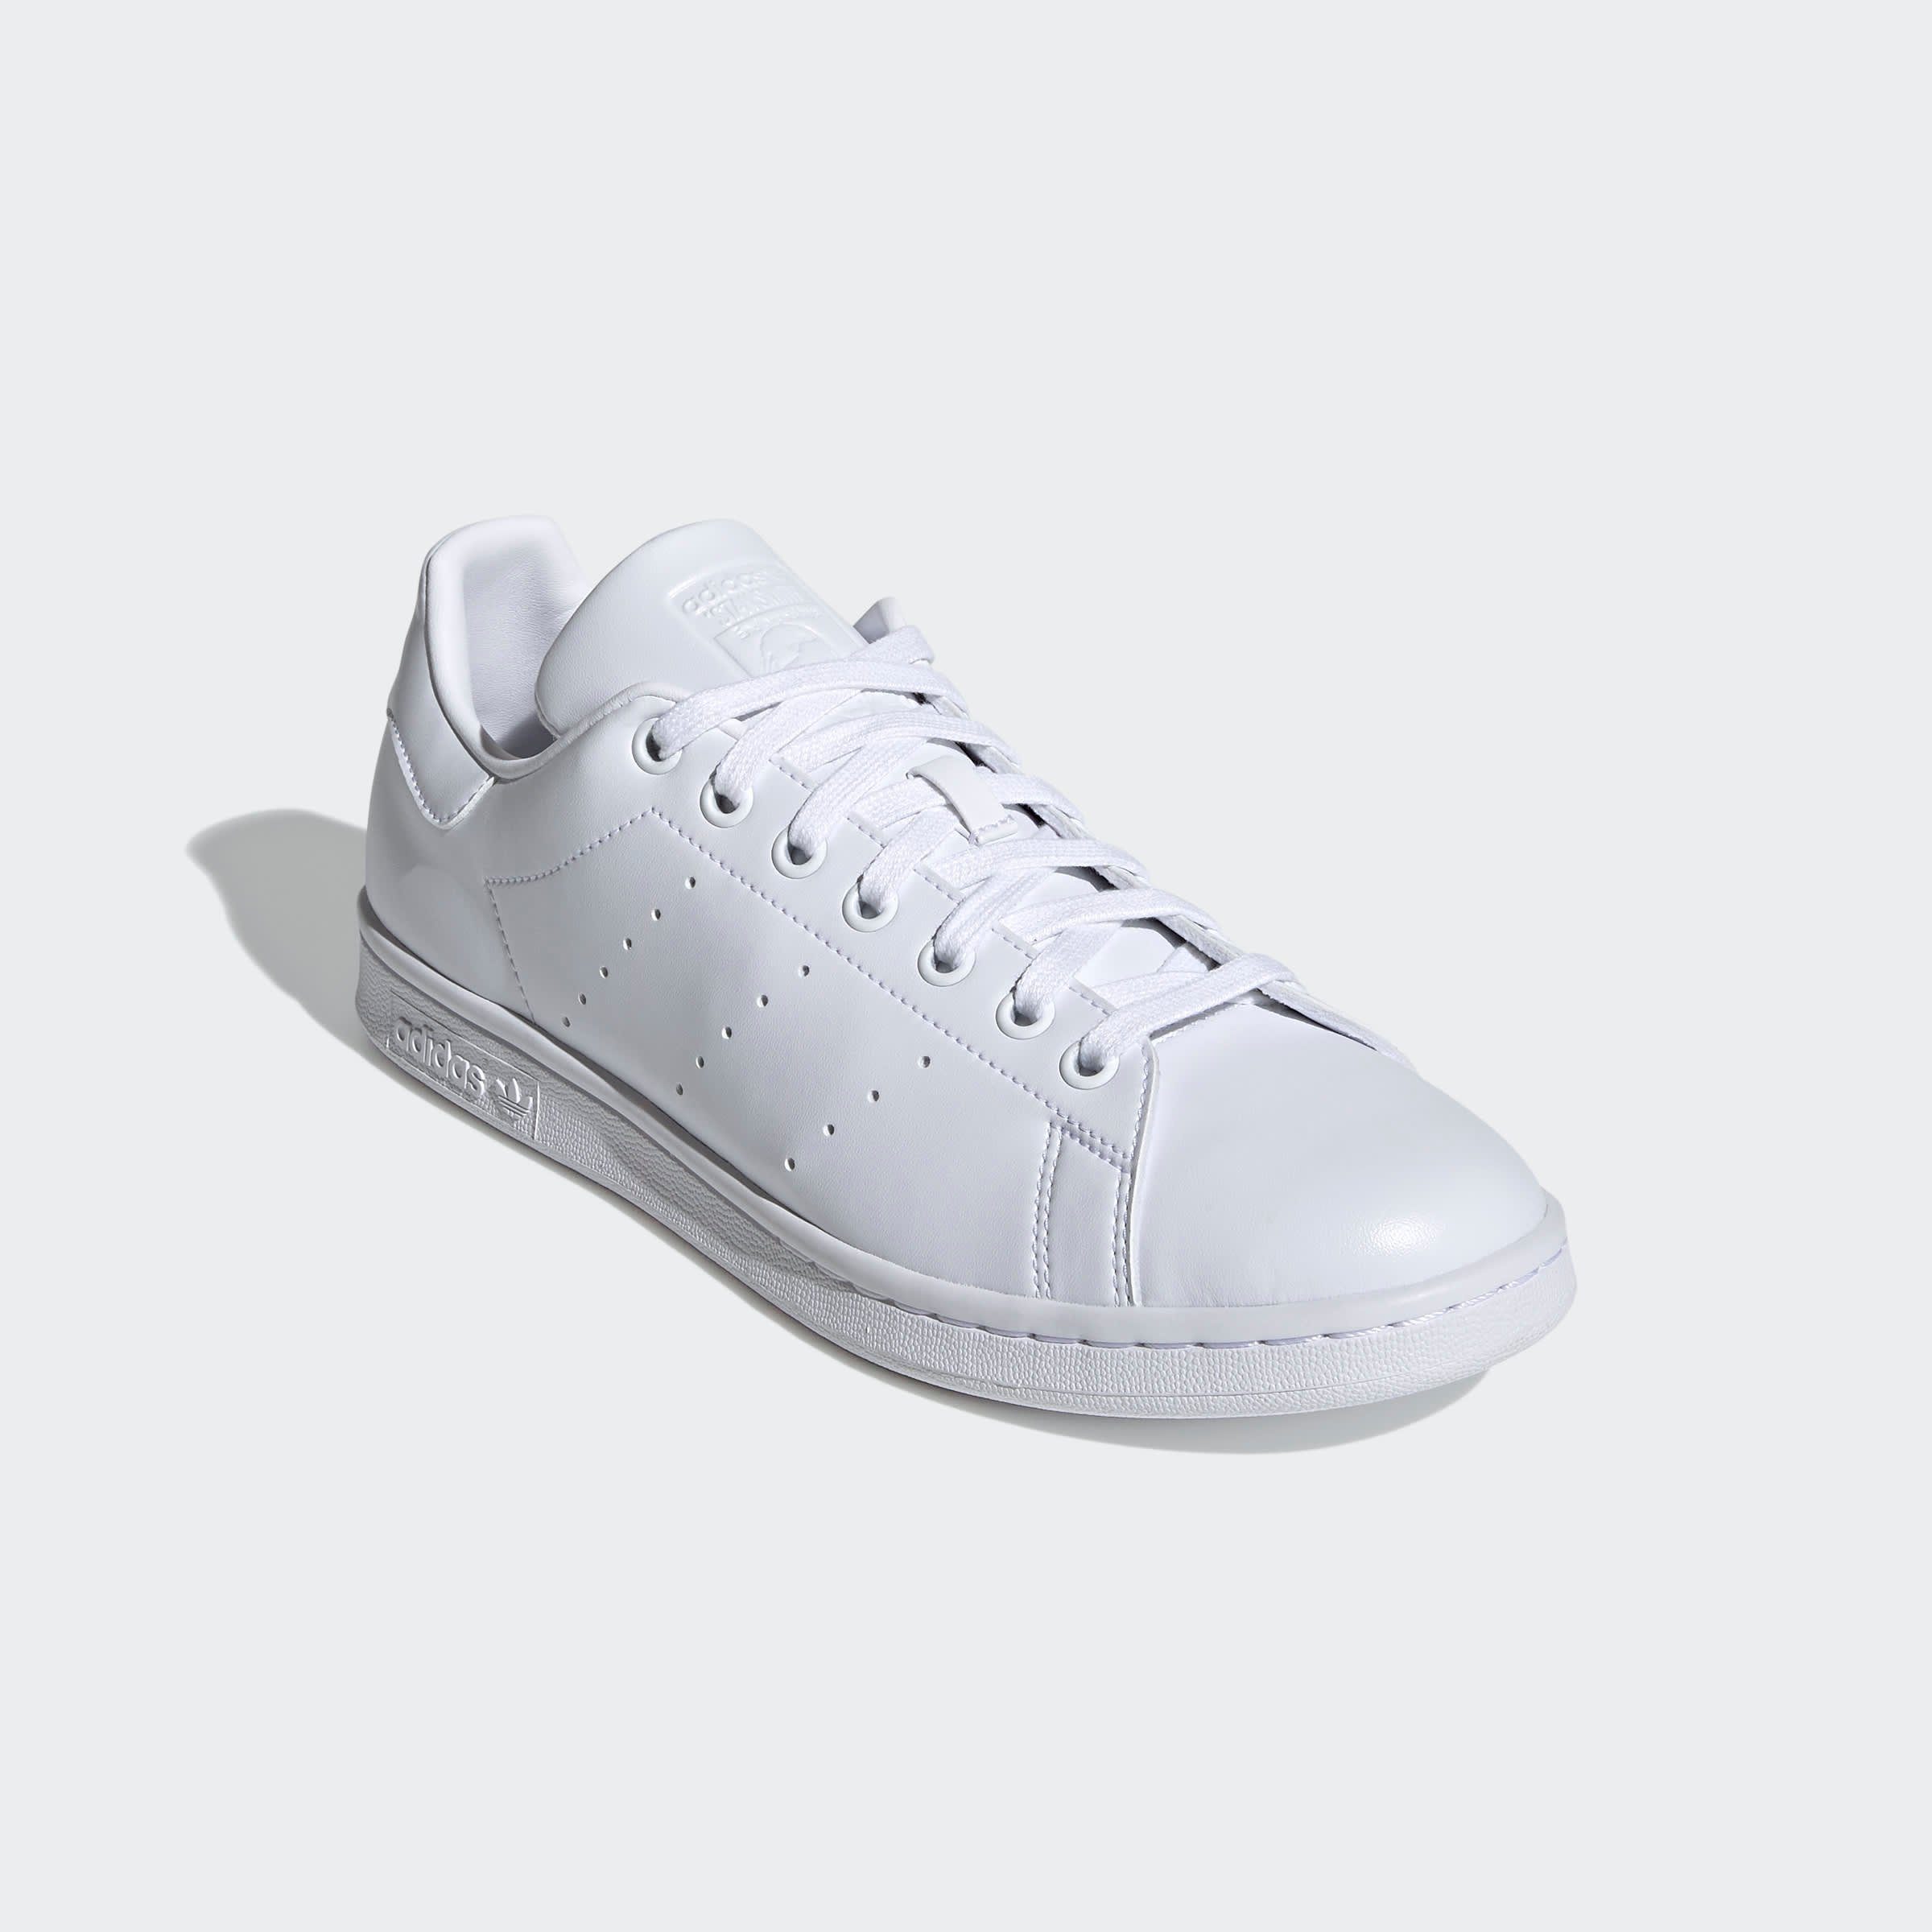 Wees Pidgin Iets adidas Stan Smith sneakers kopen? Shop online bij | OTTO